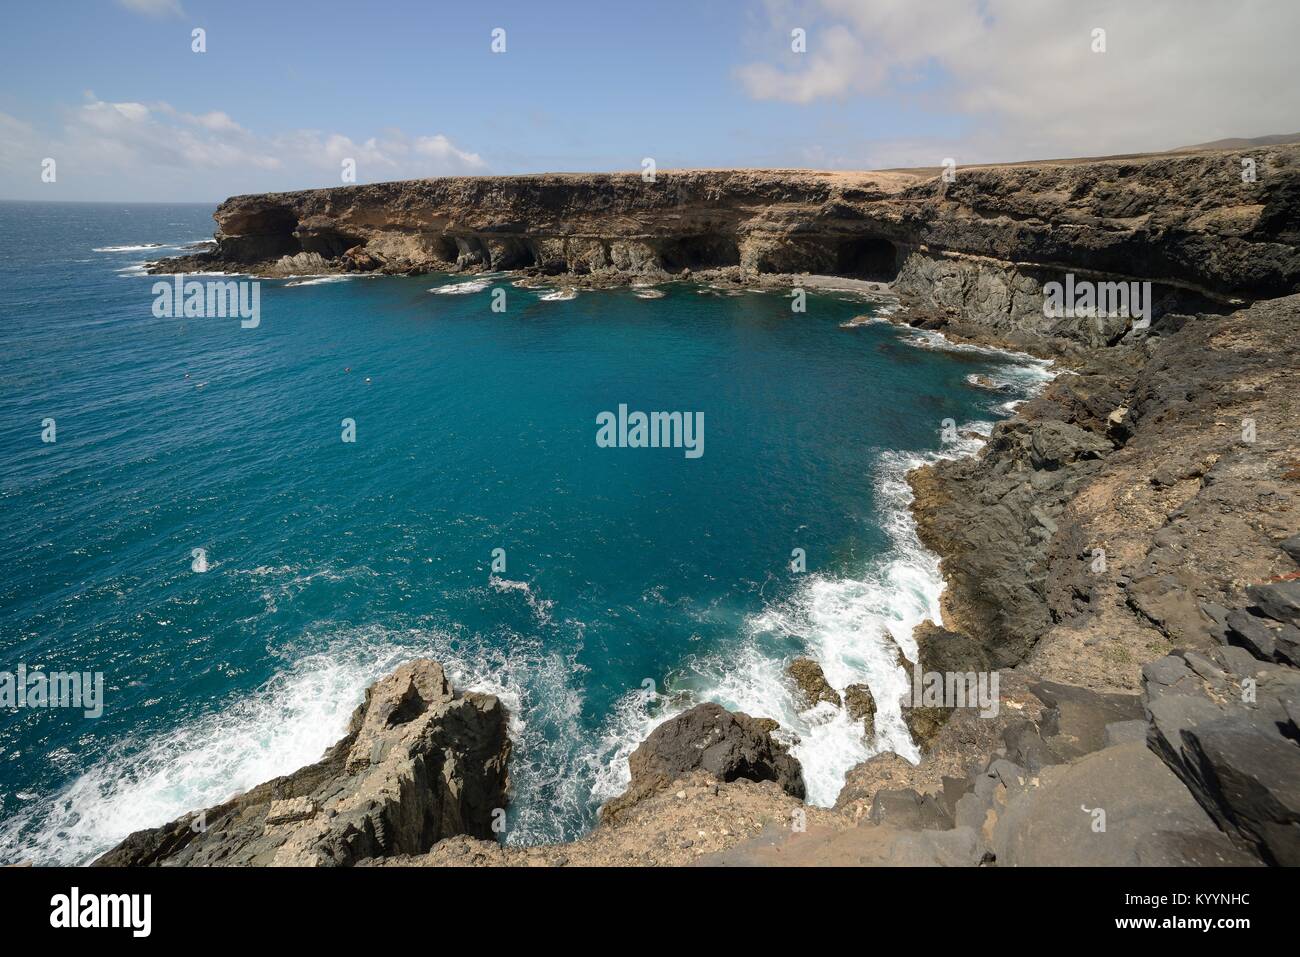 Aperçu de l'Anse Noire / Caleta Negra entouré de falaises de roche volcanique érodée, Monument Naturel d'Ajuy (Puerto de la Peña), à Fuerteventura. Banque D'Images